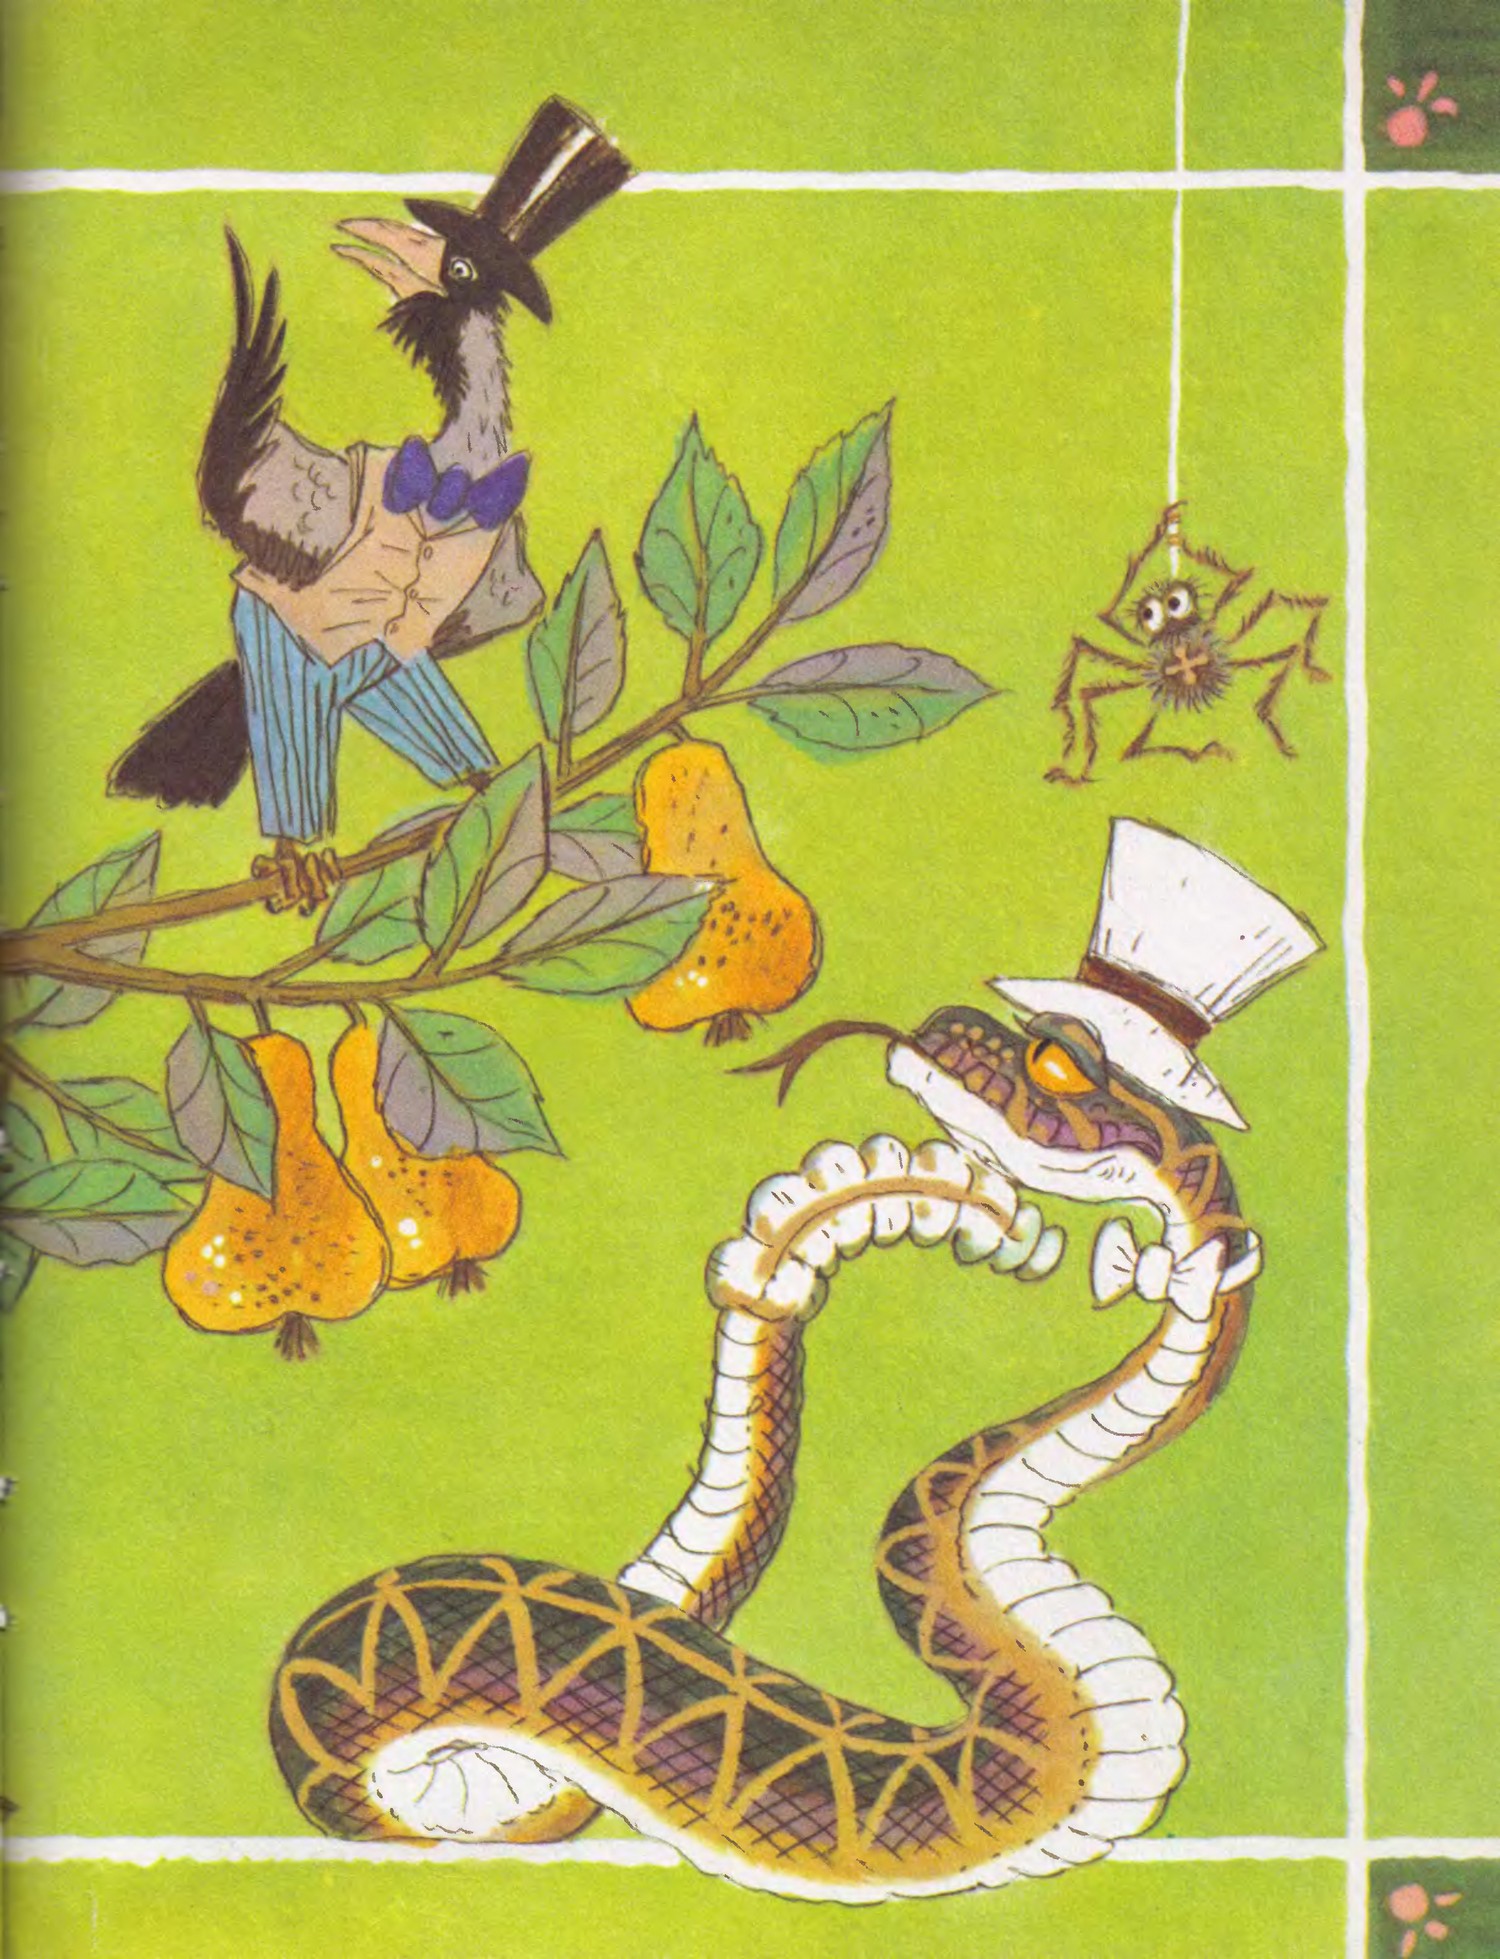 Читать про змей. Сказка про змейку. Сказка про змею.